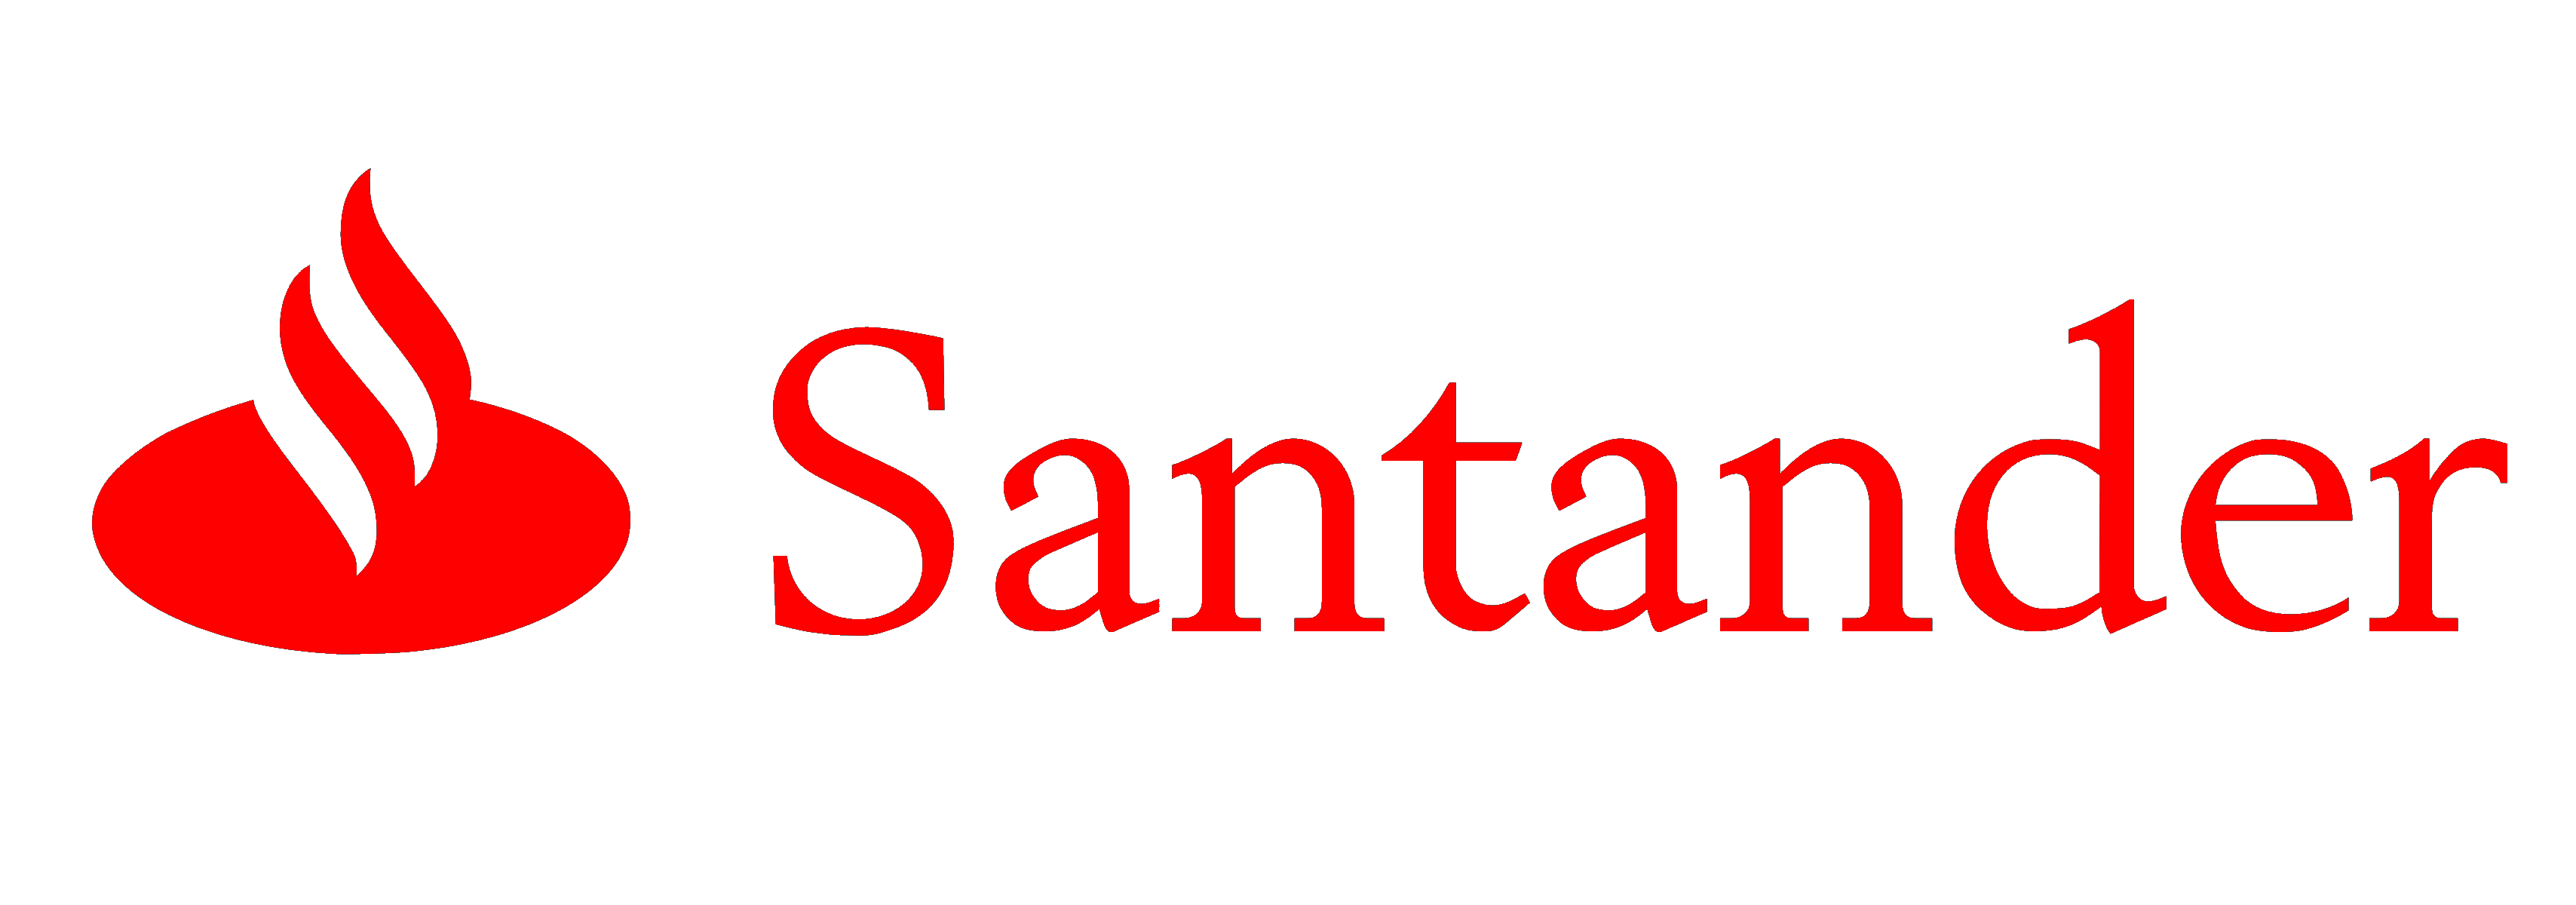 Ejemplo de diseño corporativo de Santander